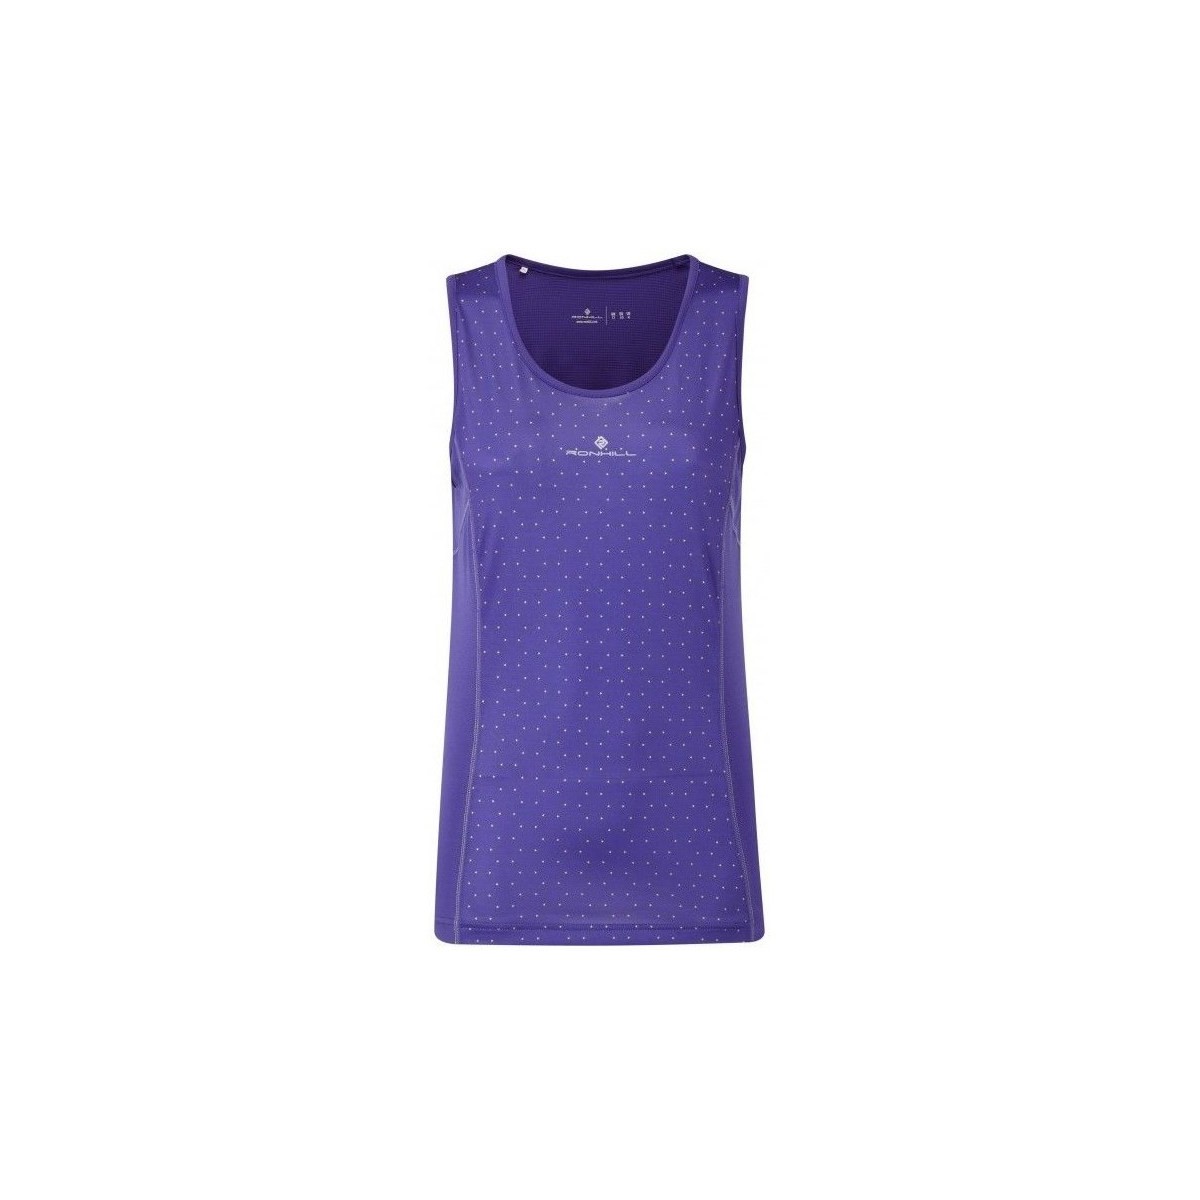 Vêtements Femme T-shirts manches courtes Ronhill Aspiration Vest Violet